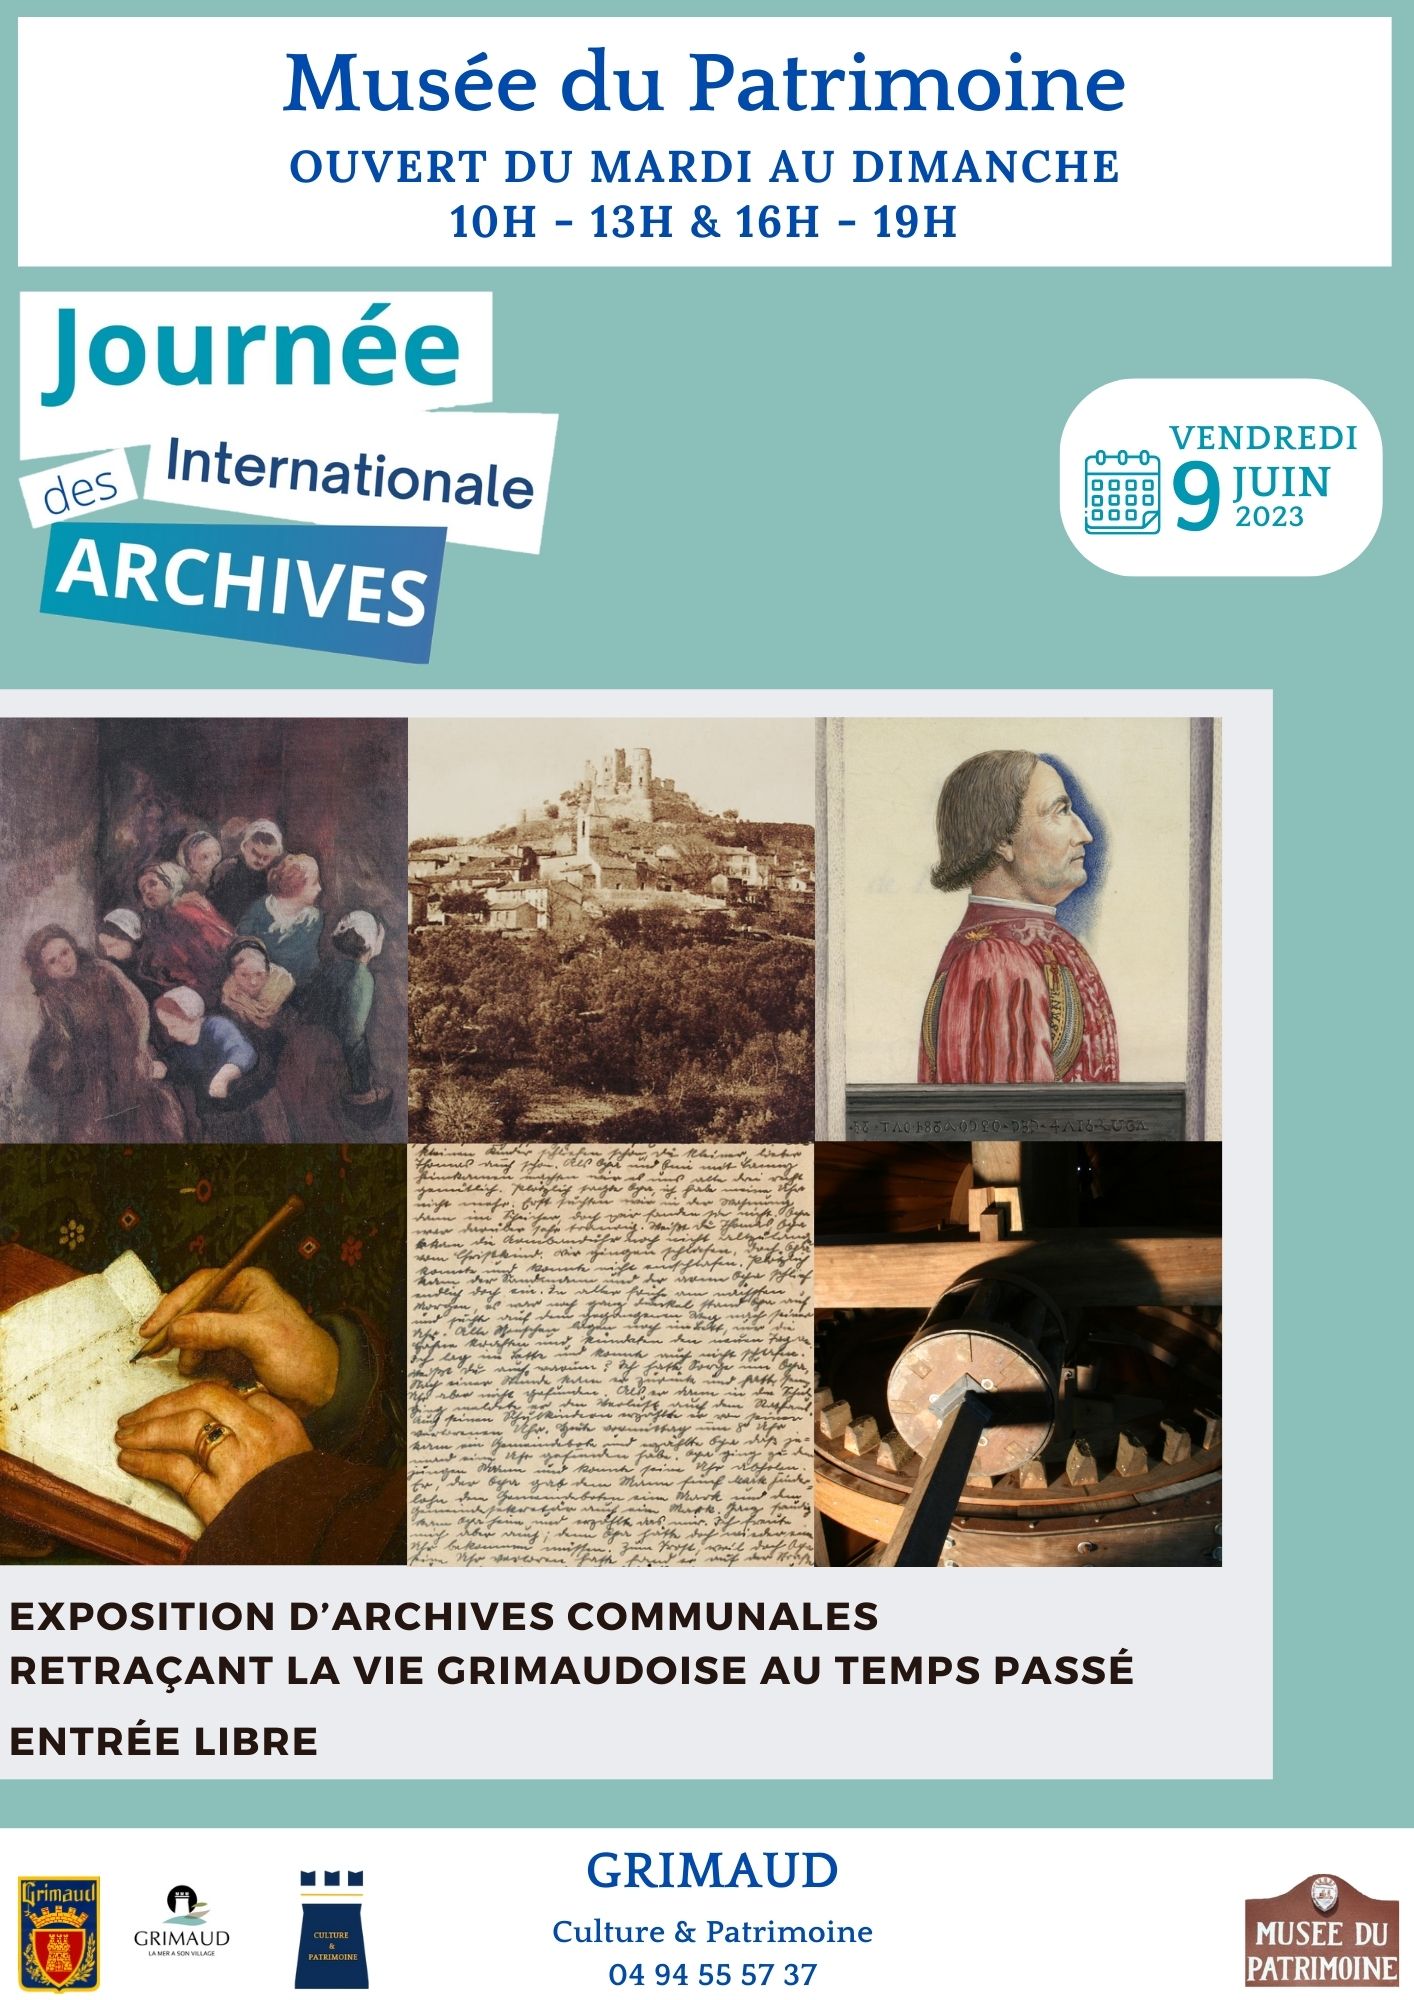 Vendredi 09 juin 2023 - Journée internationale des archives au Musée du patrimoine